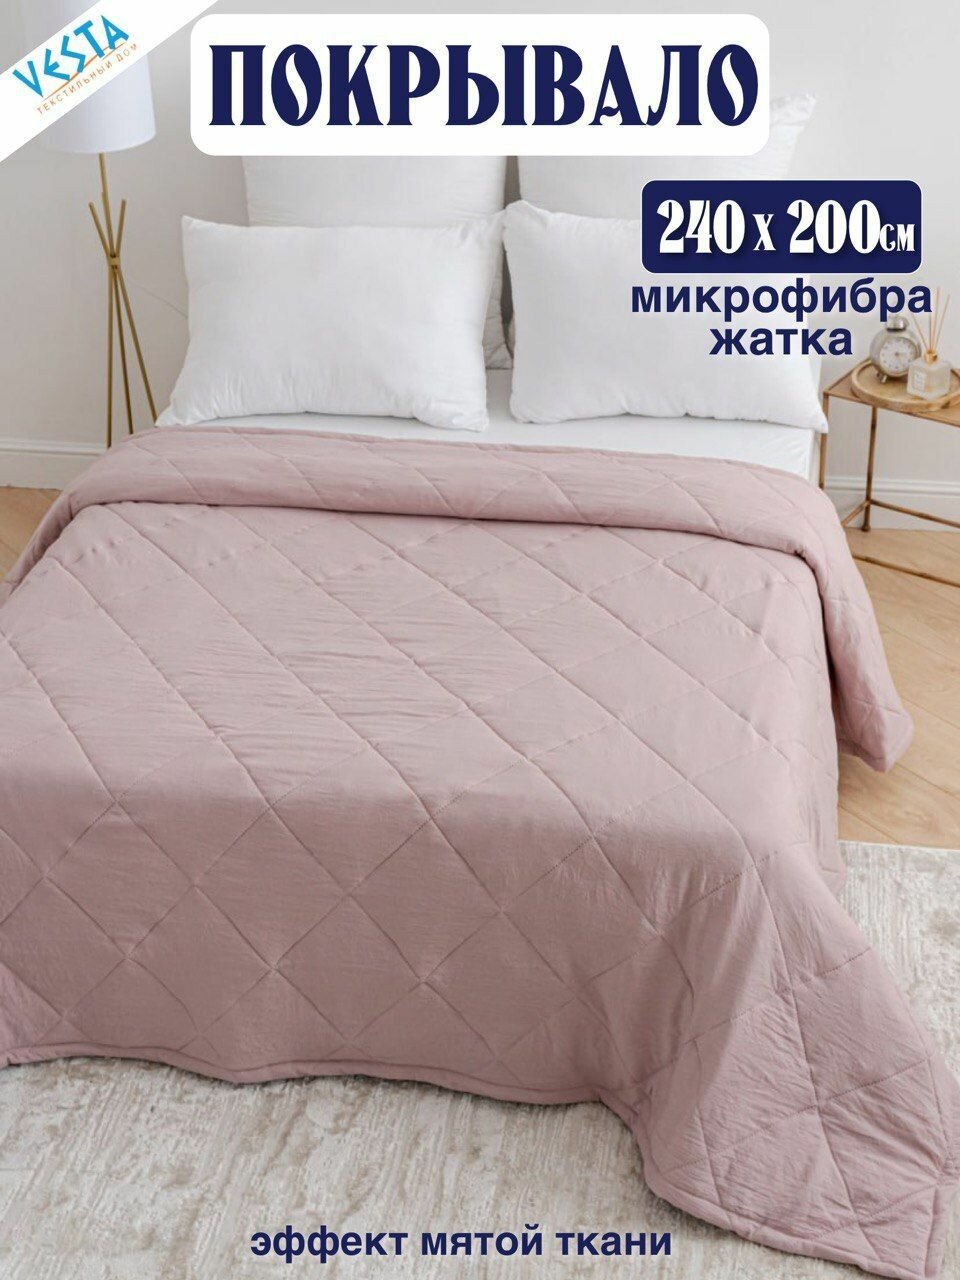 Покрывало розовый амарант Vesta с эффектом мятой ткани, плед на кровать и диван стеганный 240х200см